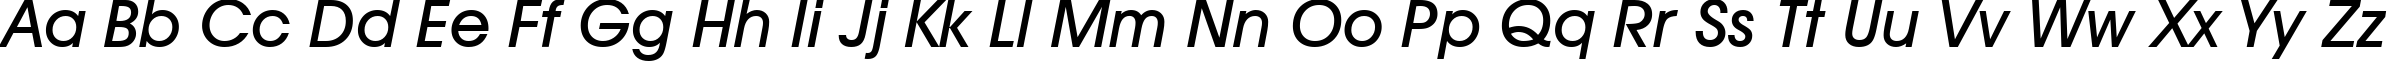 Пример написания английского алфавита шрифтом Avant Garde Medium Oblique BT